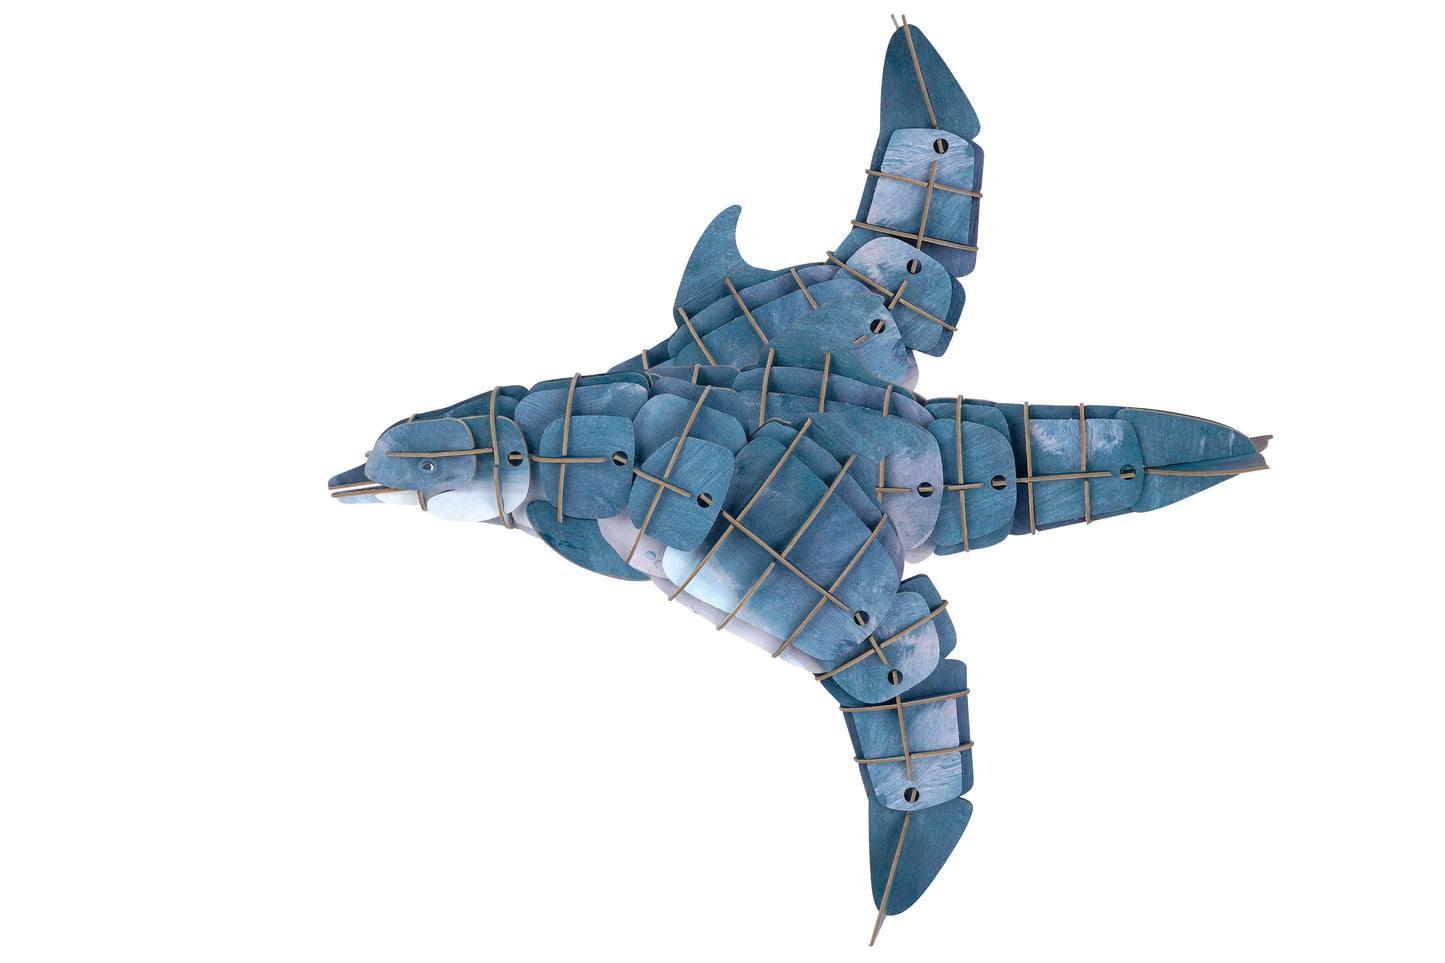 MierEdu Eco 3D Puzzle, der Delfin,einstellbar